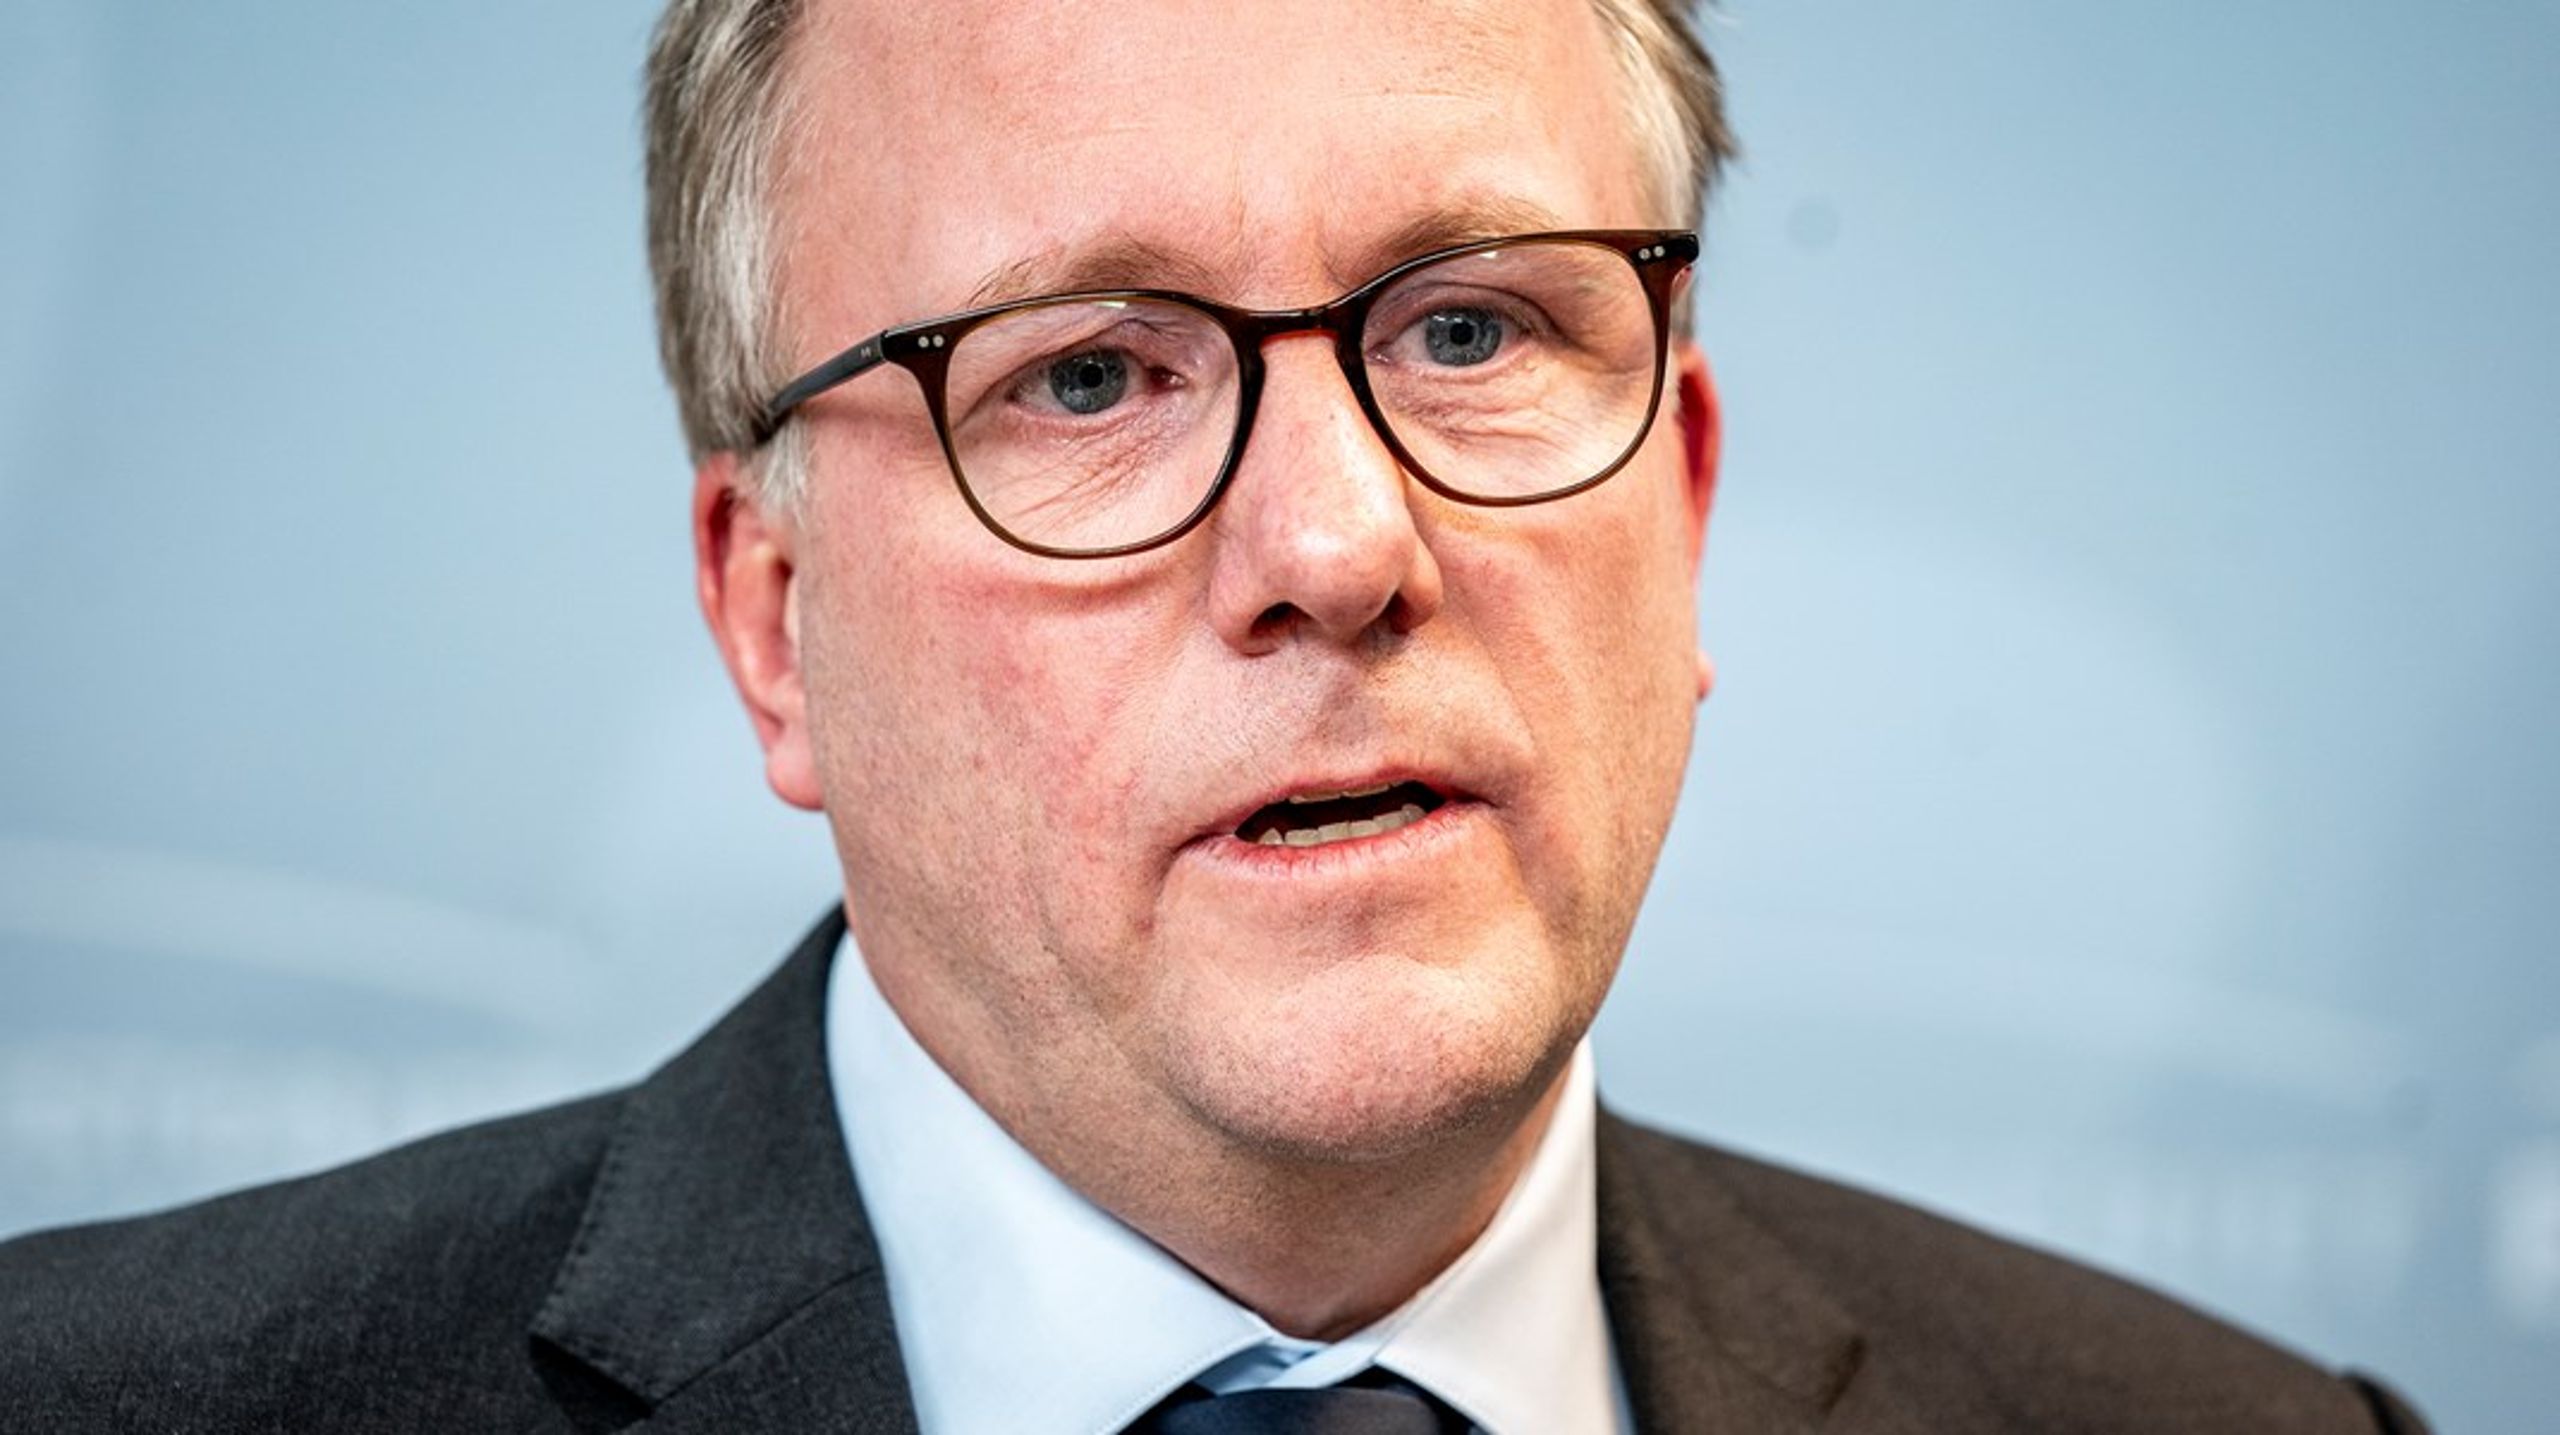 Erhvervsminister Morten Bødskov vil afsætte 1,5 millarder kroner til iværksætterstrategien frem mod 2027, men flere partier er skeptiske, fordi pengene ikke er et engangsbeløb, men udmøntes over flere år.